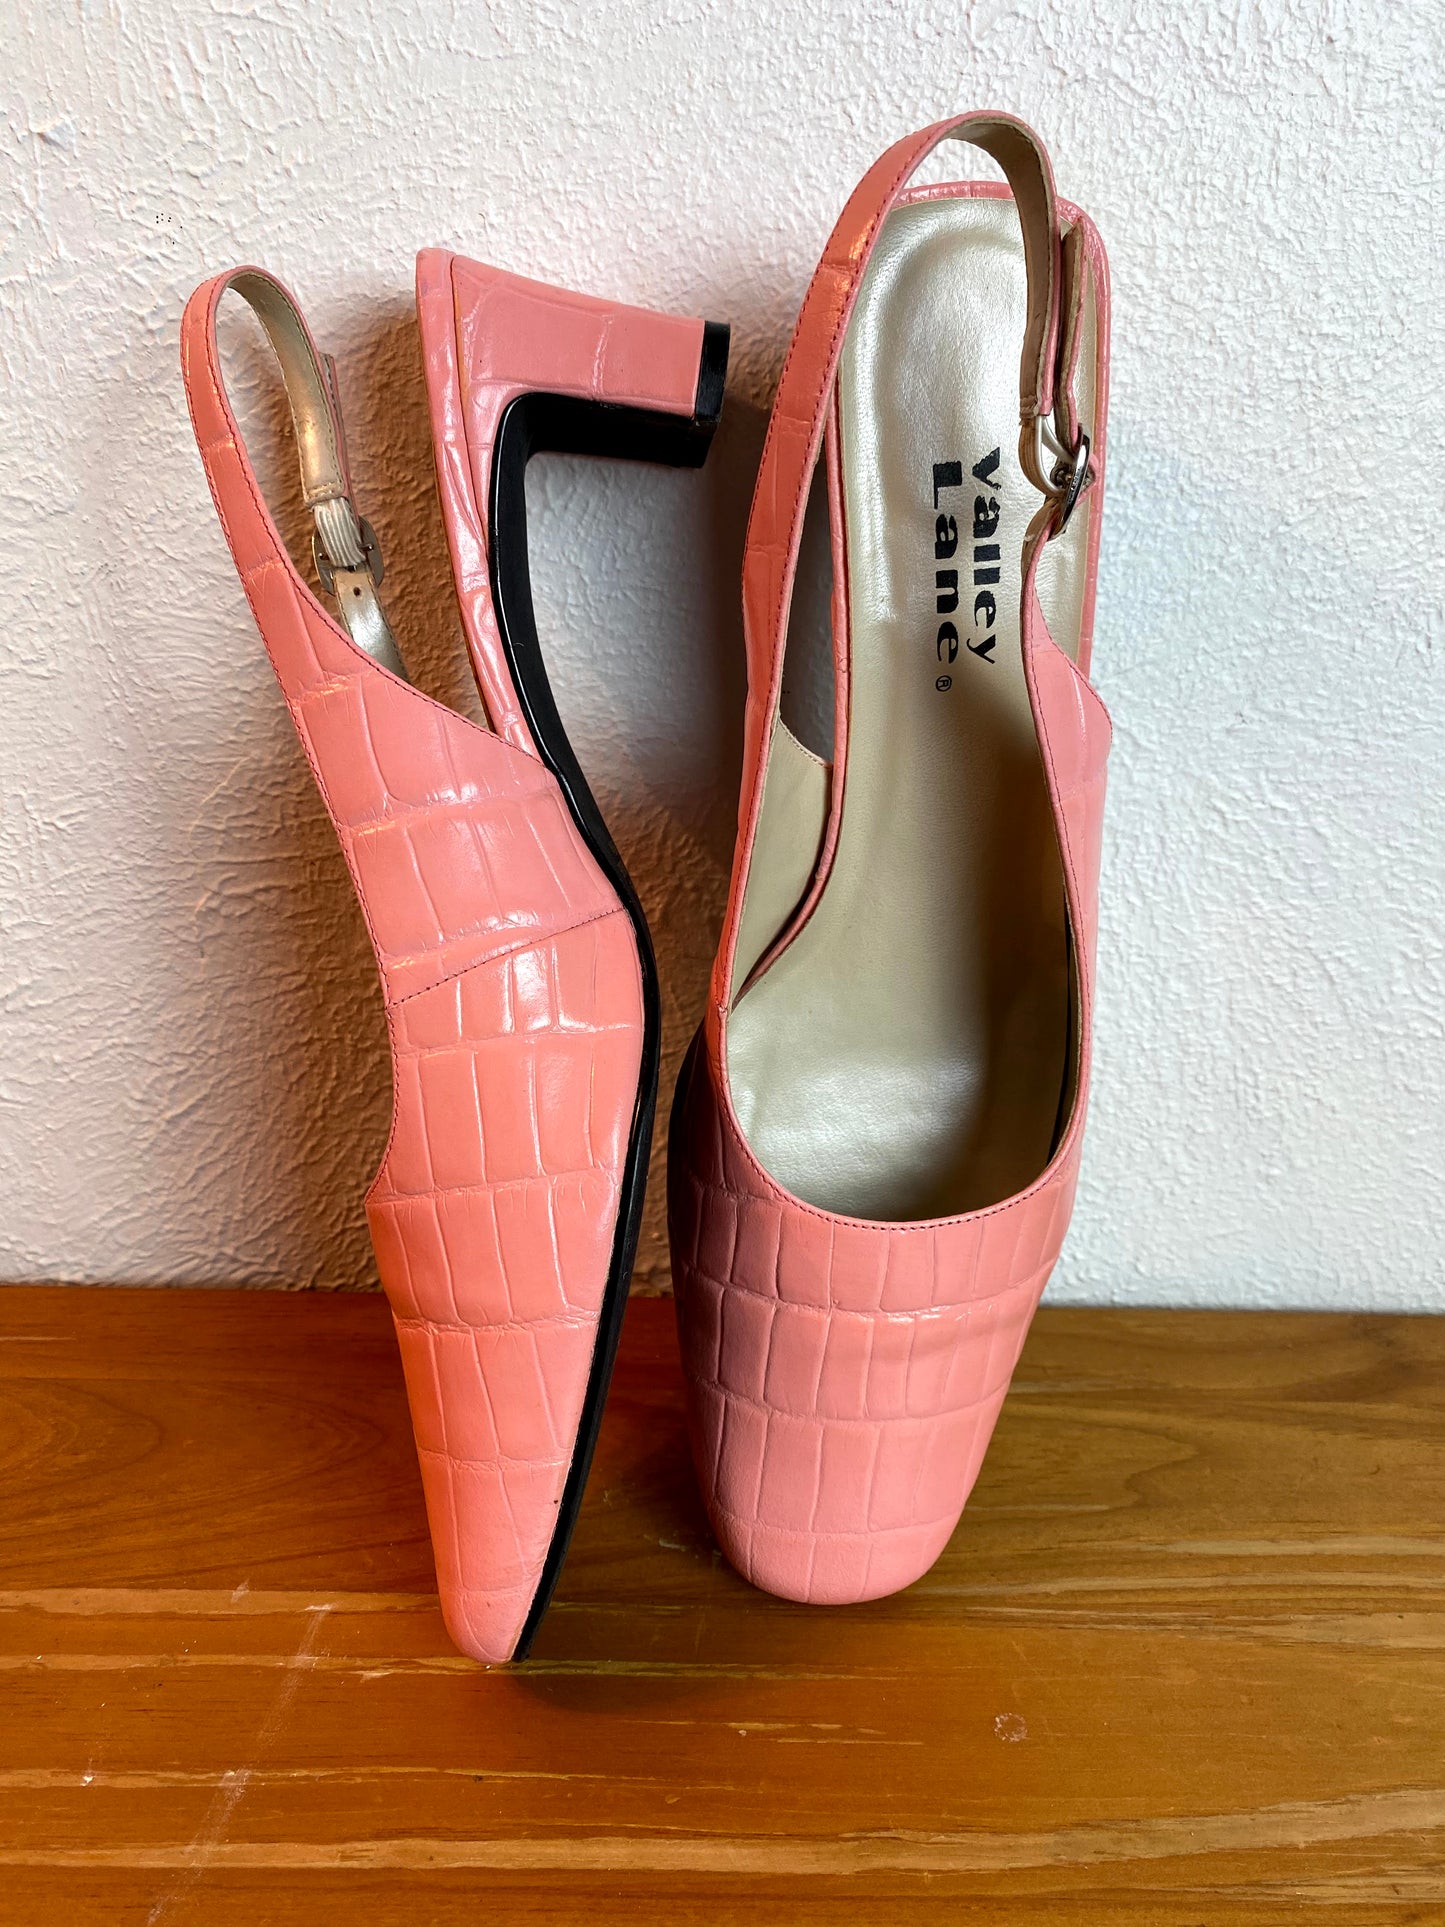 Vintage Valley Lane Pink Slingback Heels